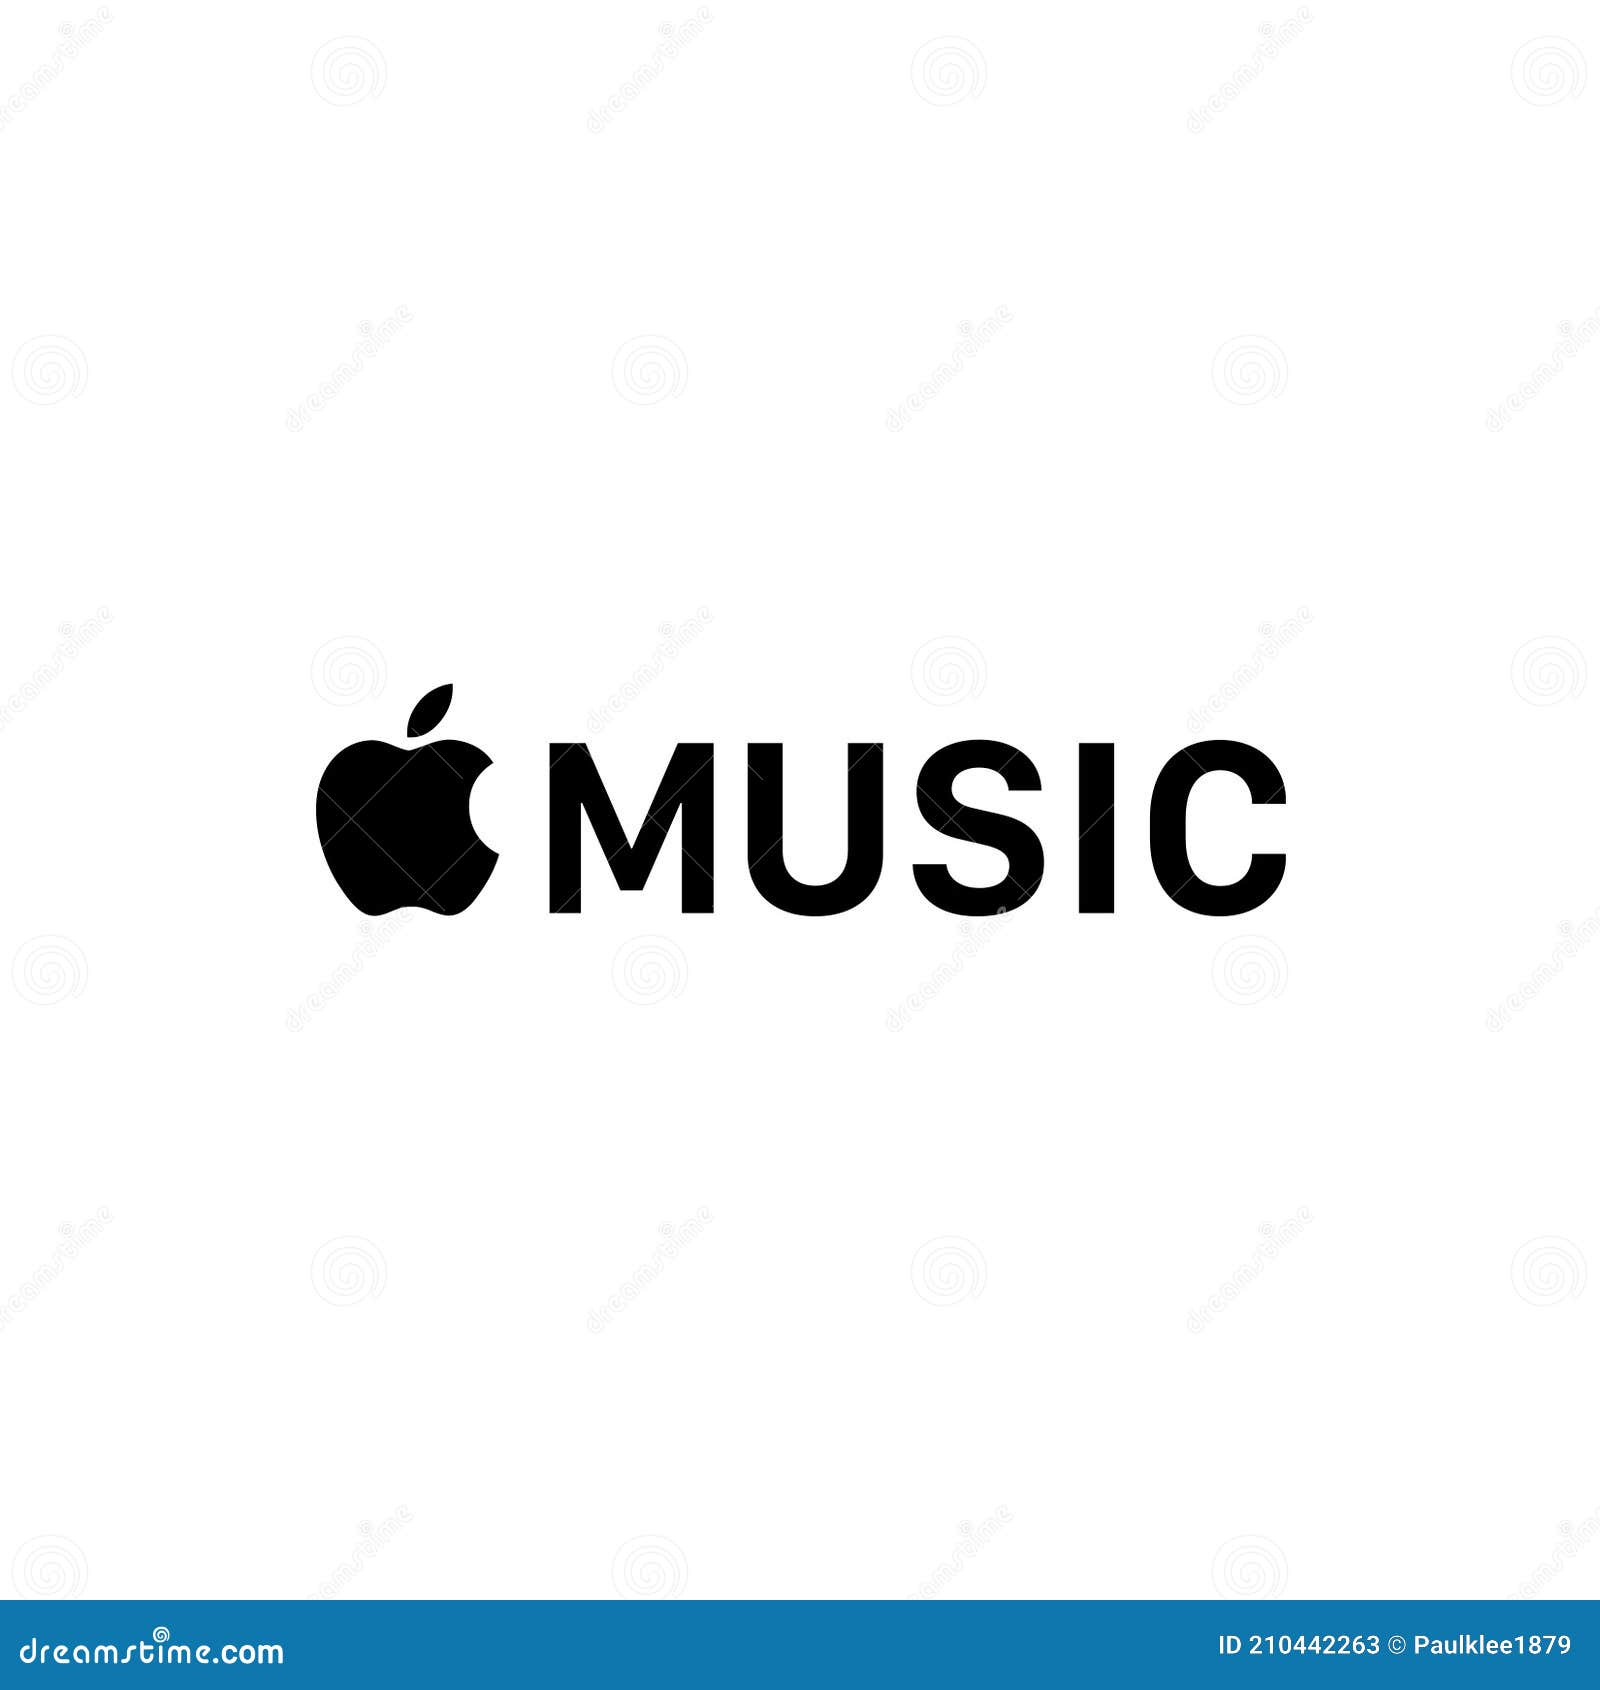 Bạn yêu thích nhạc và đặc biệt là nhạc của Apple Music? Hãy xem ngay logo nhạc Apple đầy tinh tế để cảm nhận sự sang trọng của thương hiệu này.